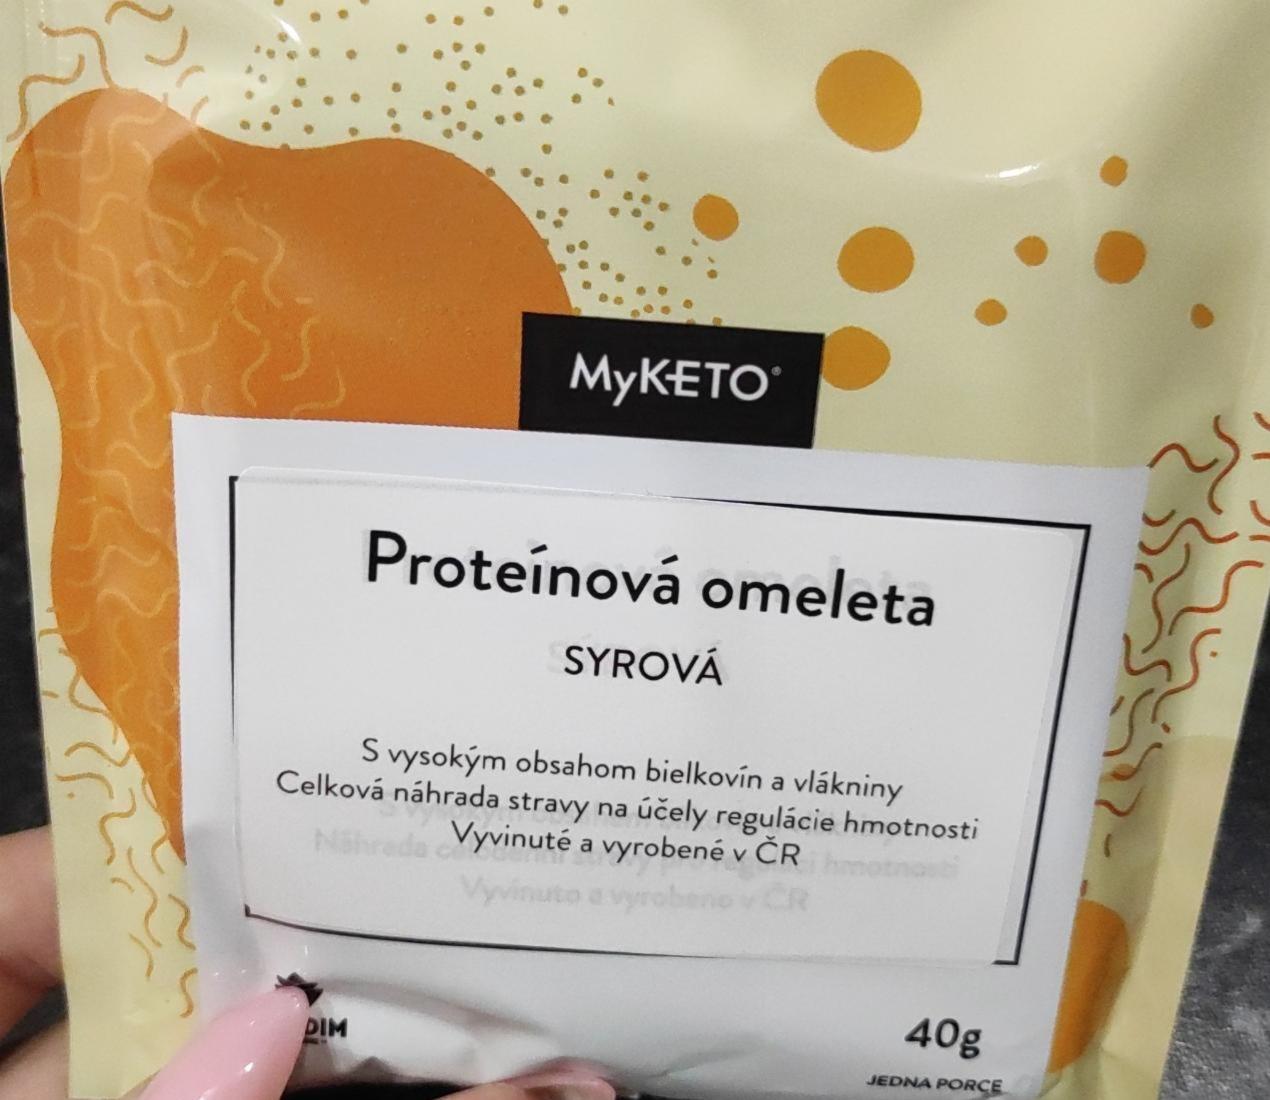 Fotografie - Proteínová omeleta syrová MyKeto